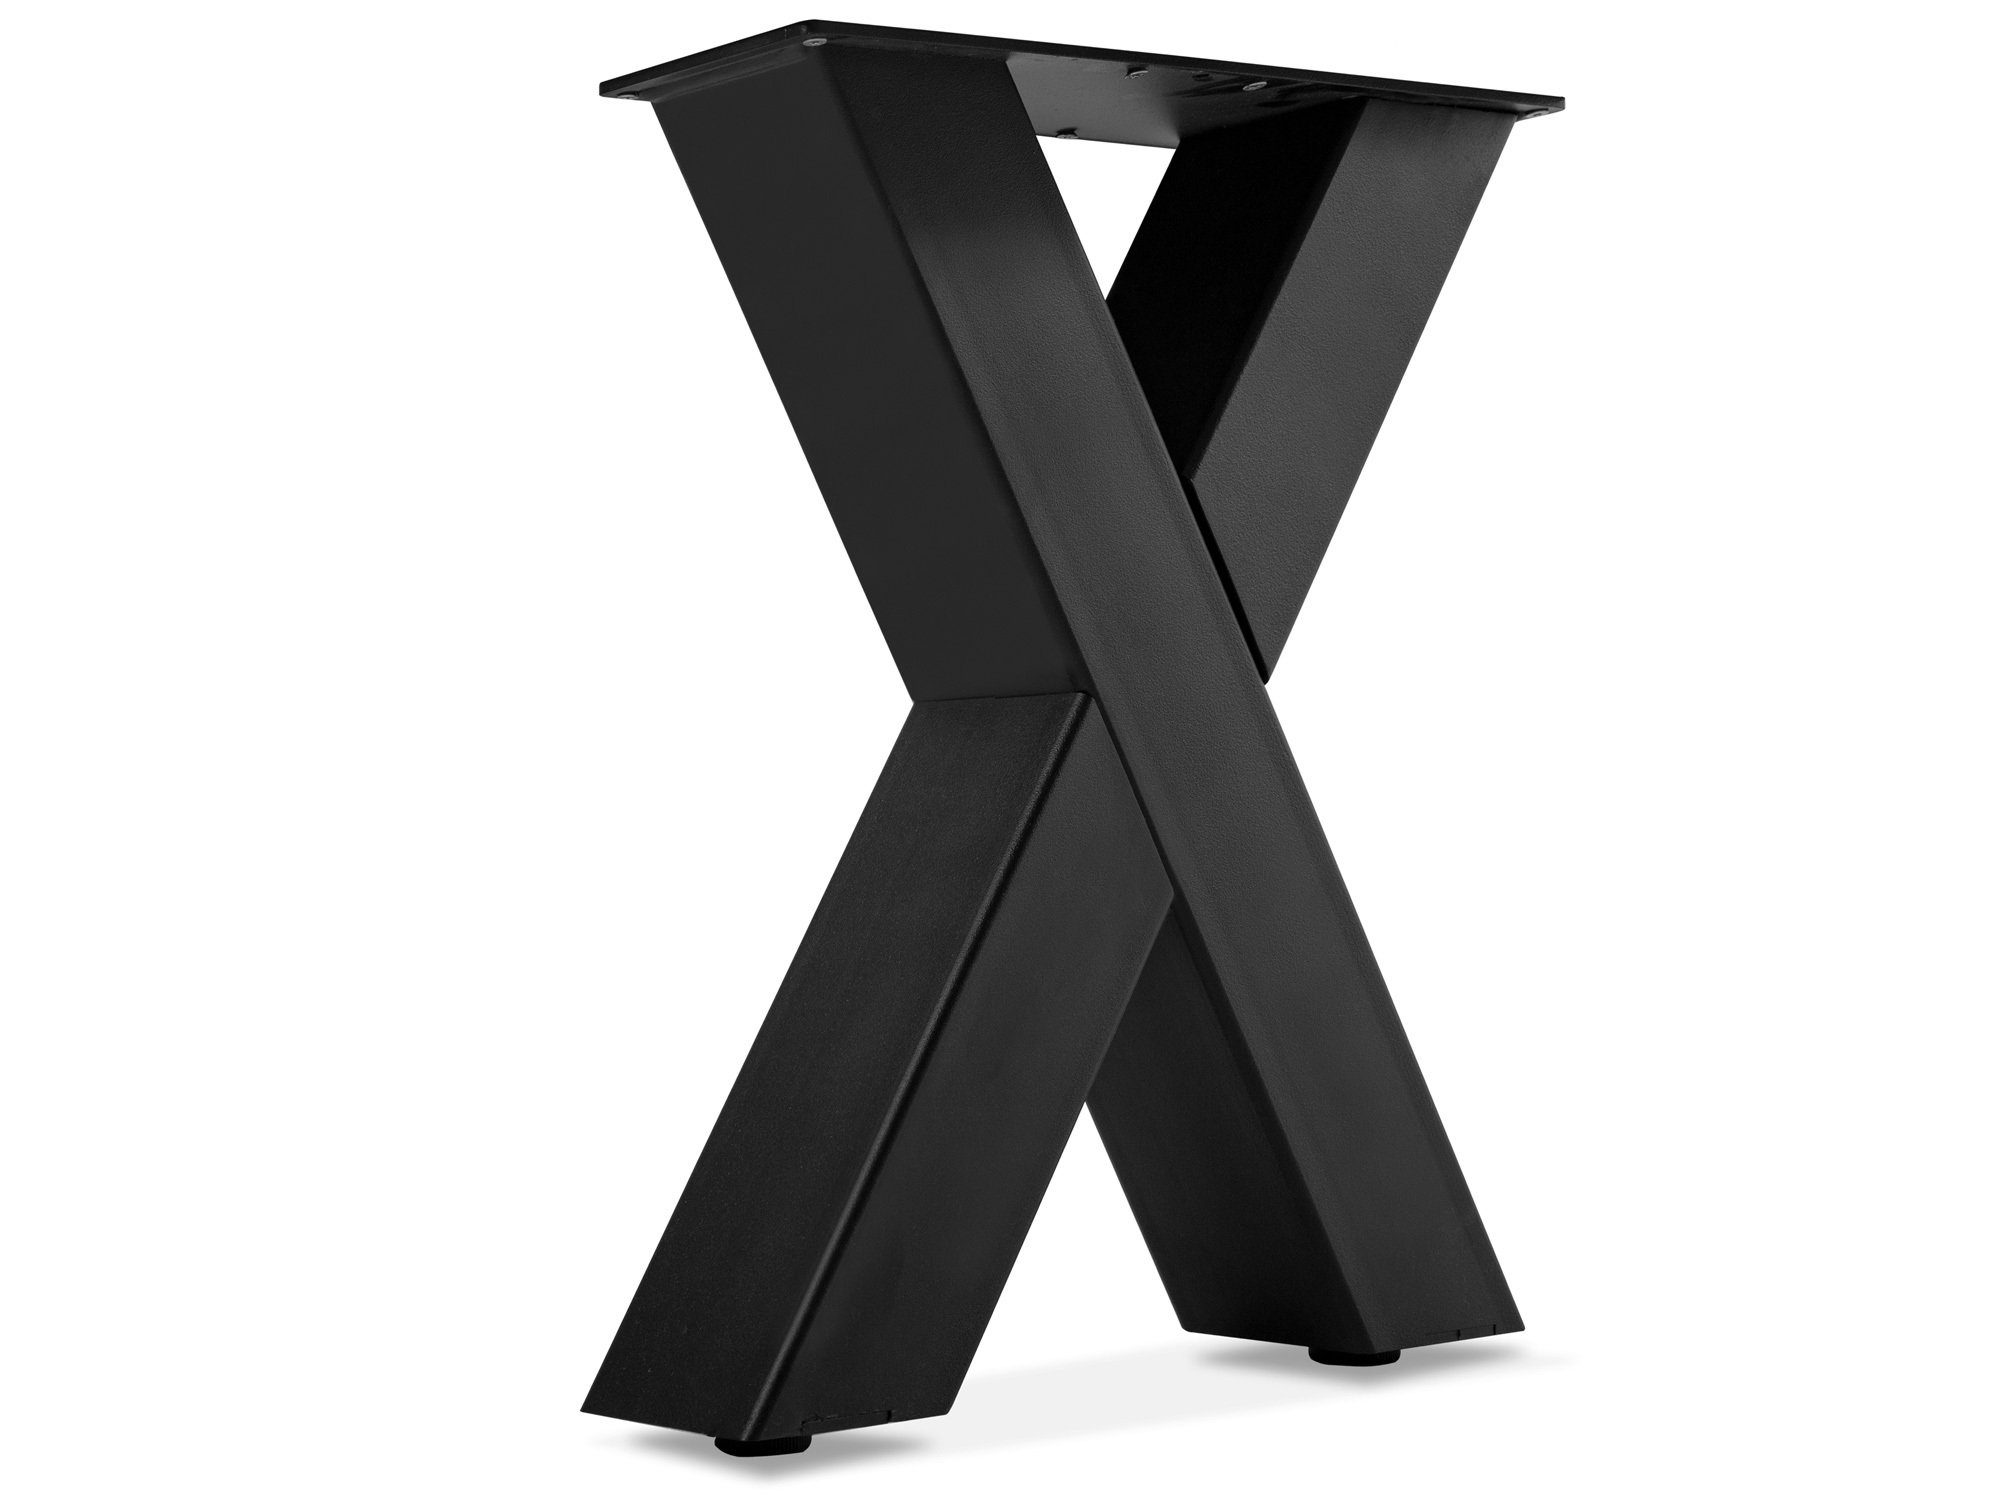 Moebel-Eins Sitzbank X-Bein für Bank, 40x46 cm, Material Stahl, schwarz, X-Bein für Bank, 40x46 cm, Material Stahl, schwarz